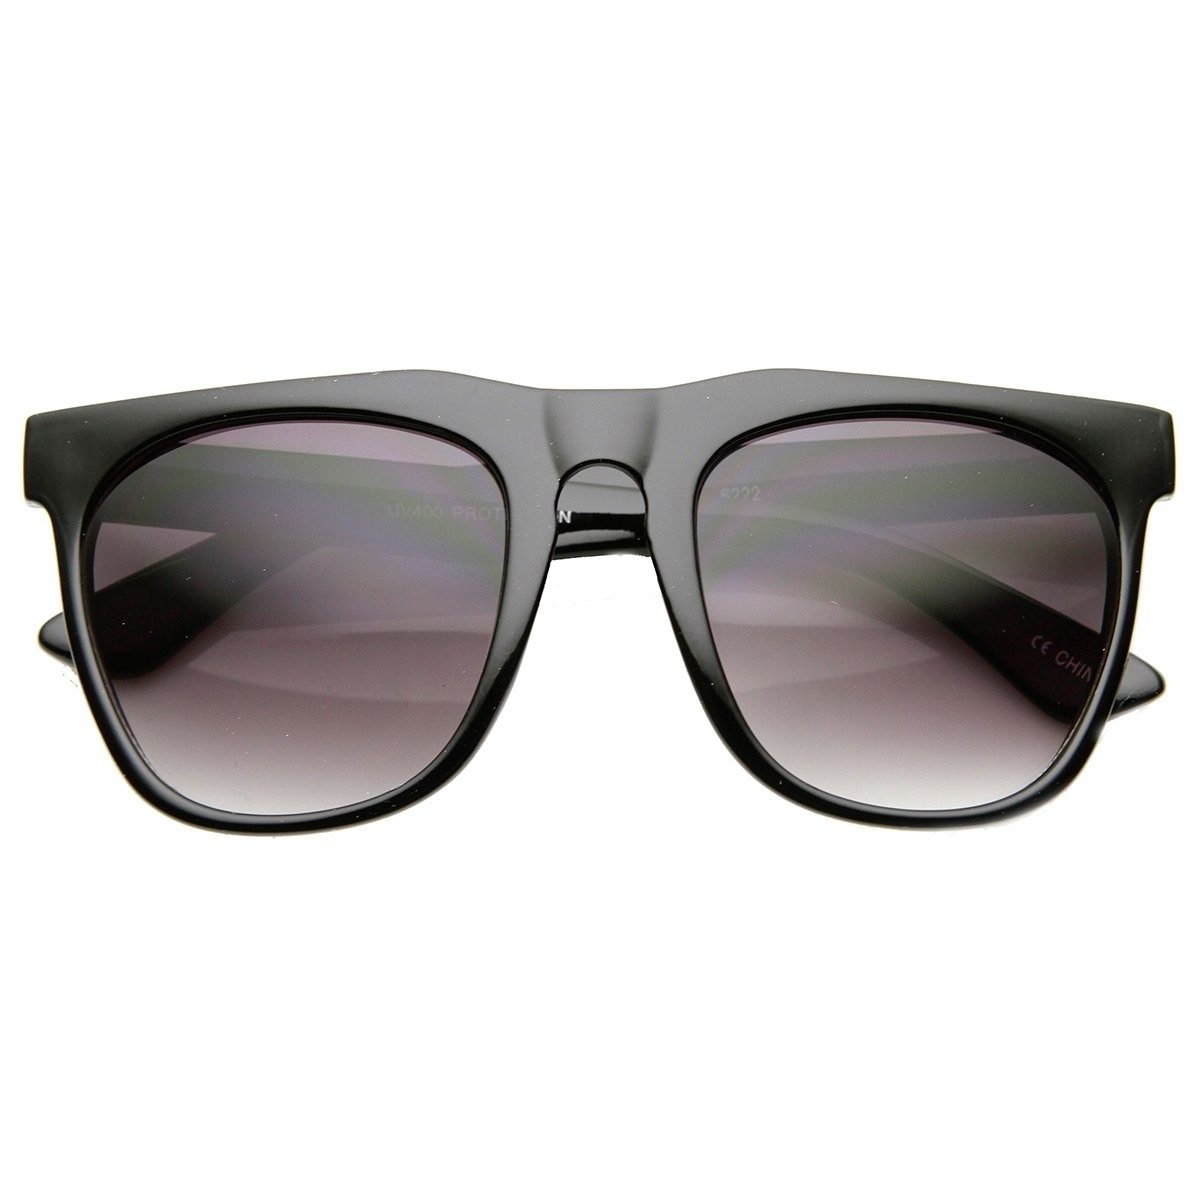 Oversized Square Horn Rimmed Keyhole Bridge Plastic Aviator Sunglasses - Shiny-Black Lavender